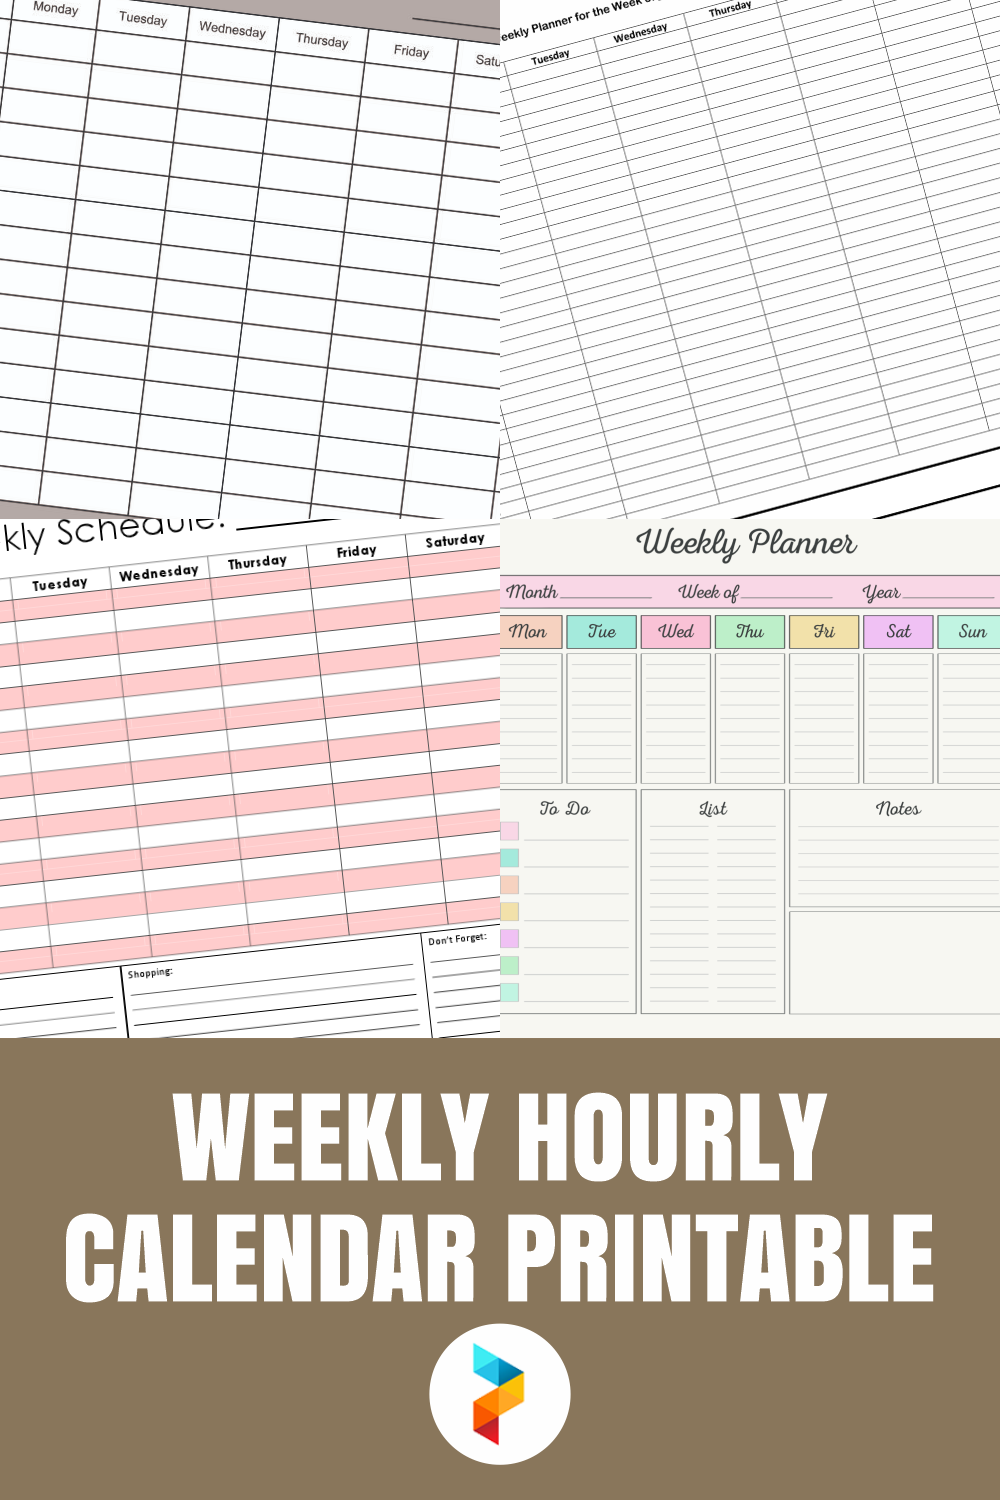 Weekly Hourly Calendar Printable